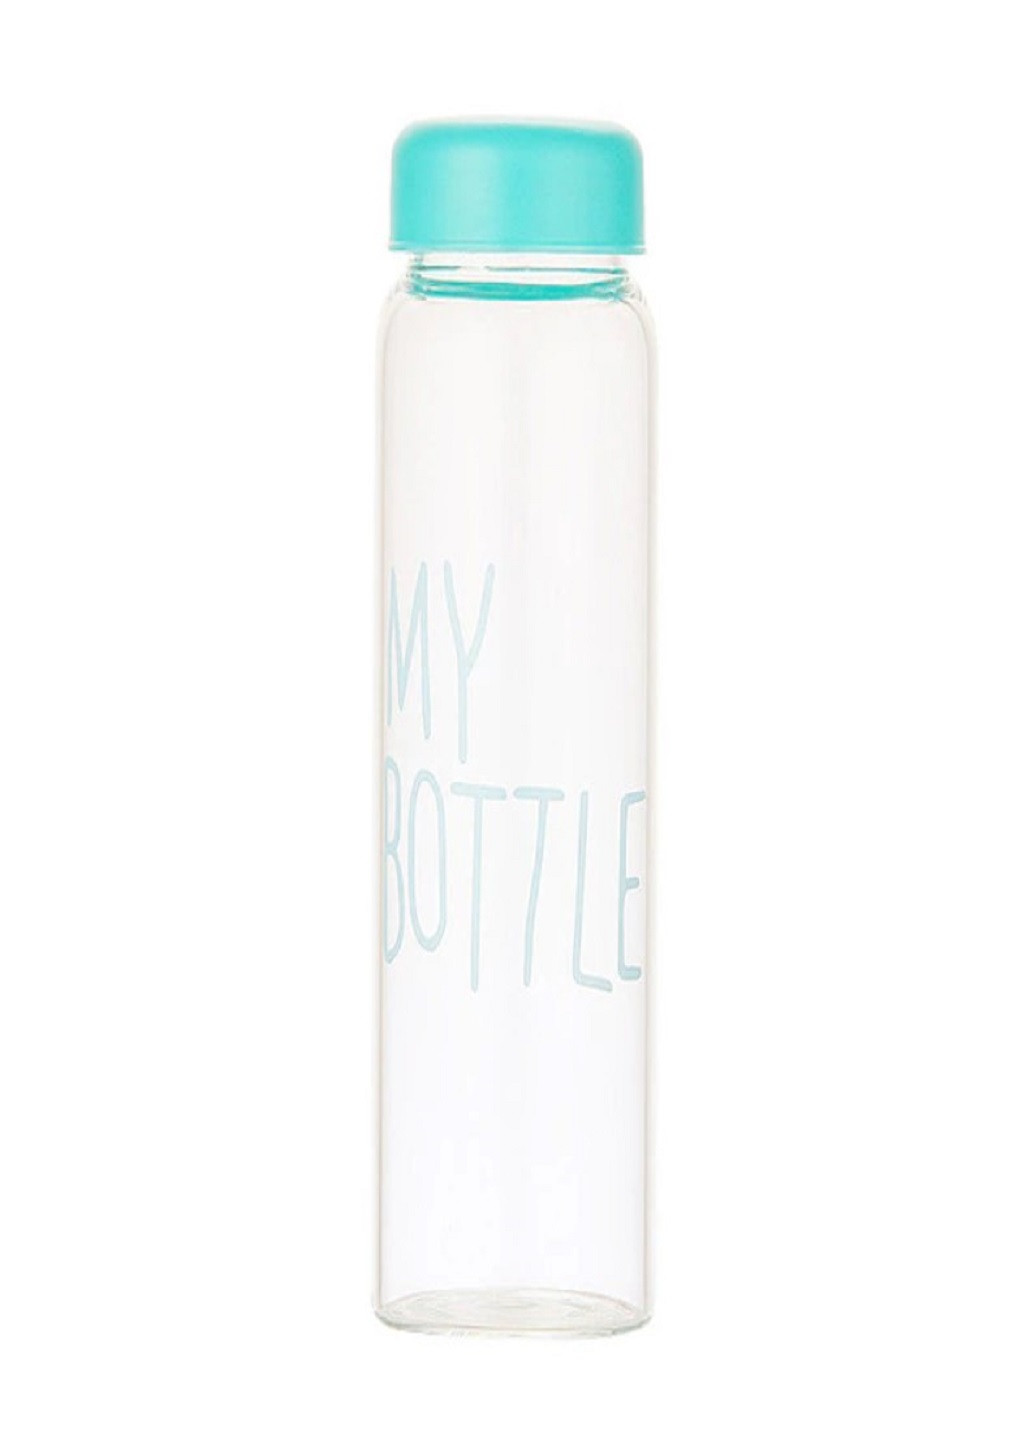 Универсальная современная компактная бутылочка с чехлом My Bottle 500мл Синяя VTech (260134026)